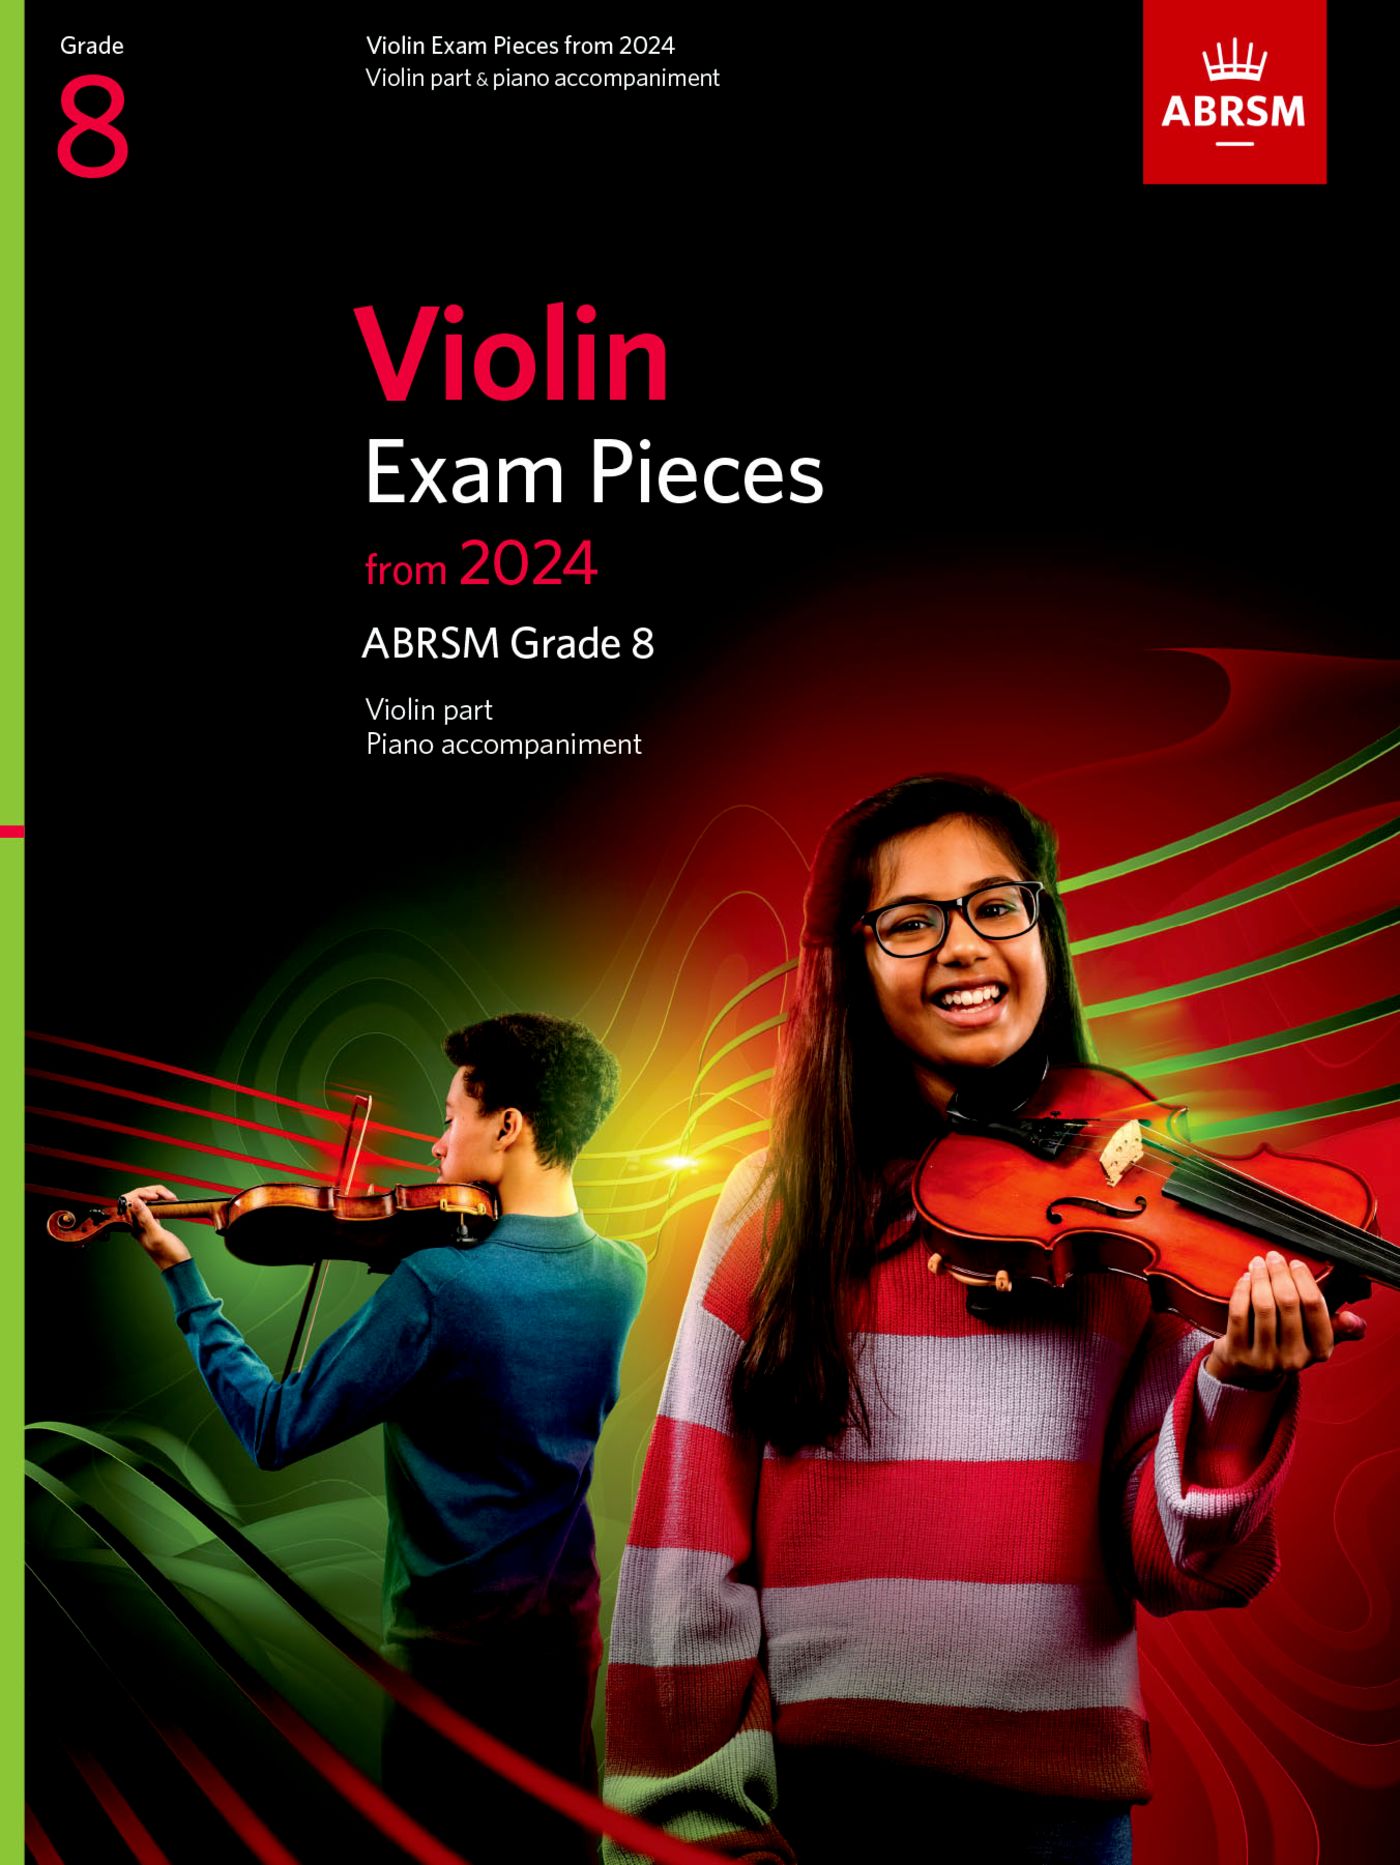 ABRSM Violin Exam Pieces 2024, Grade 8